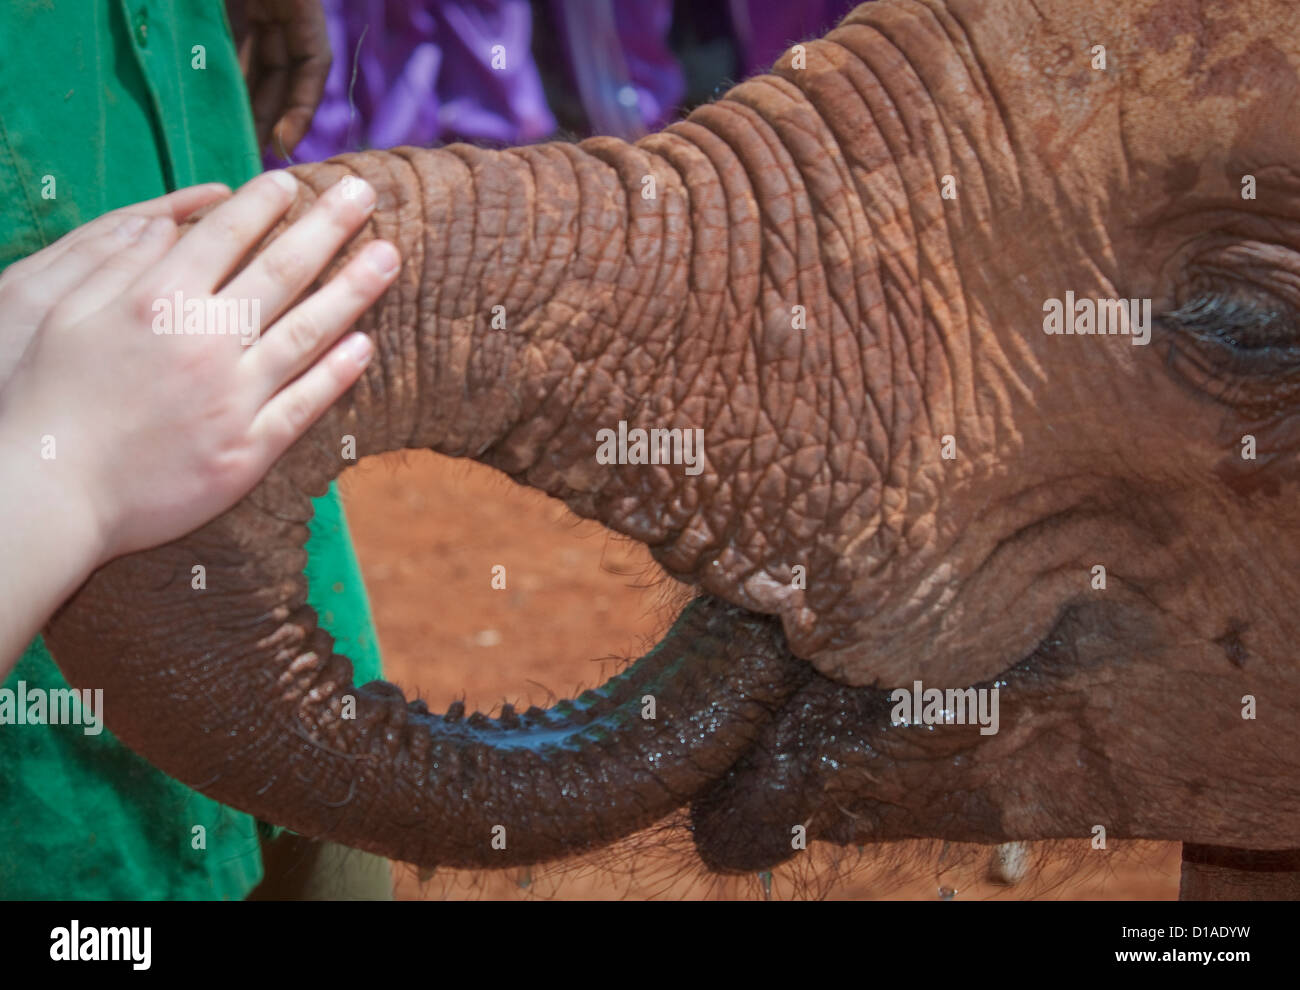 Mädchens Hand streicheln verwaiste afrikanische Elefanten Baby-David Sheldrick Wildlife Trust Stockfoto